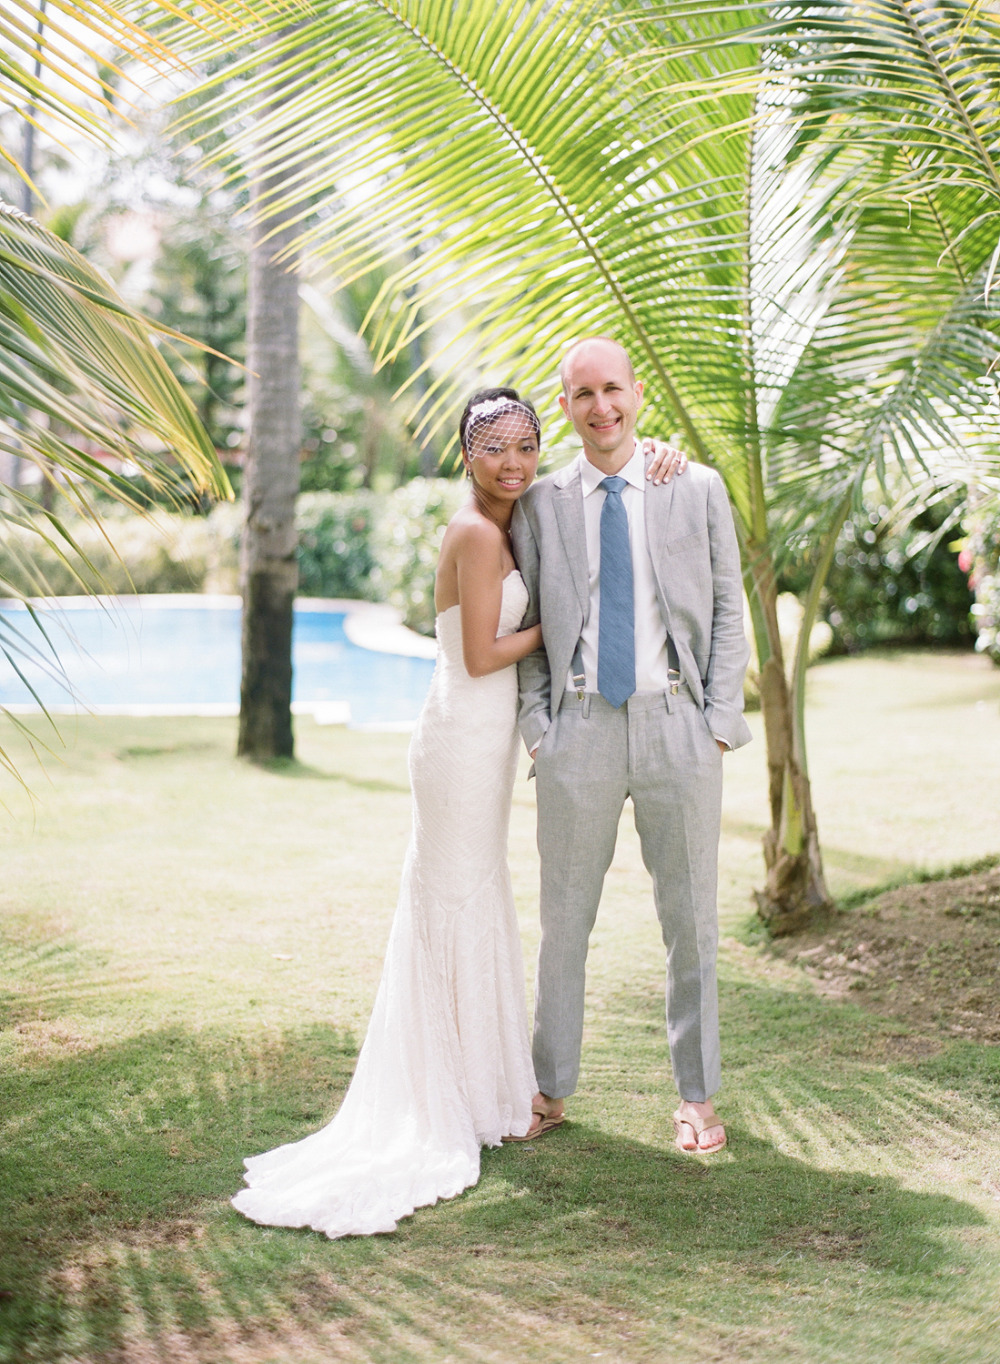 Punta Cana destination wedding ideas